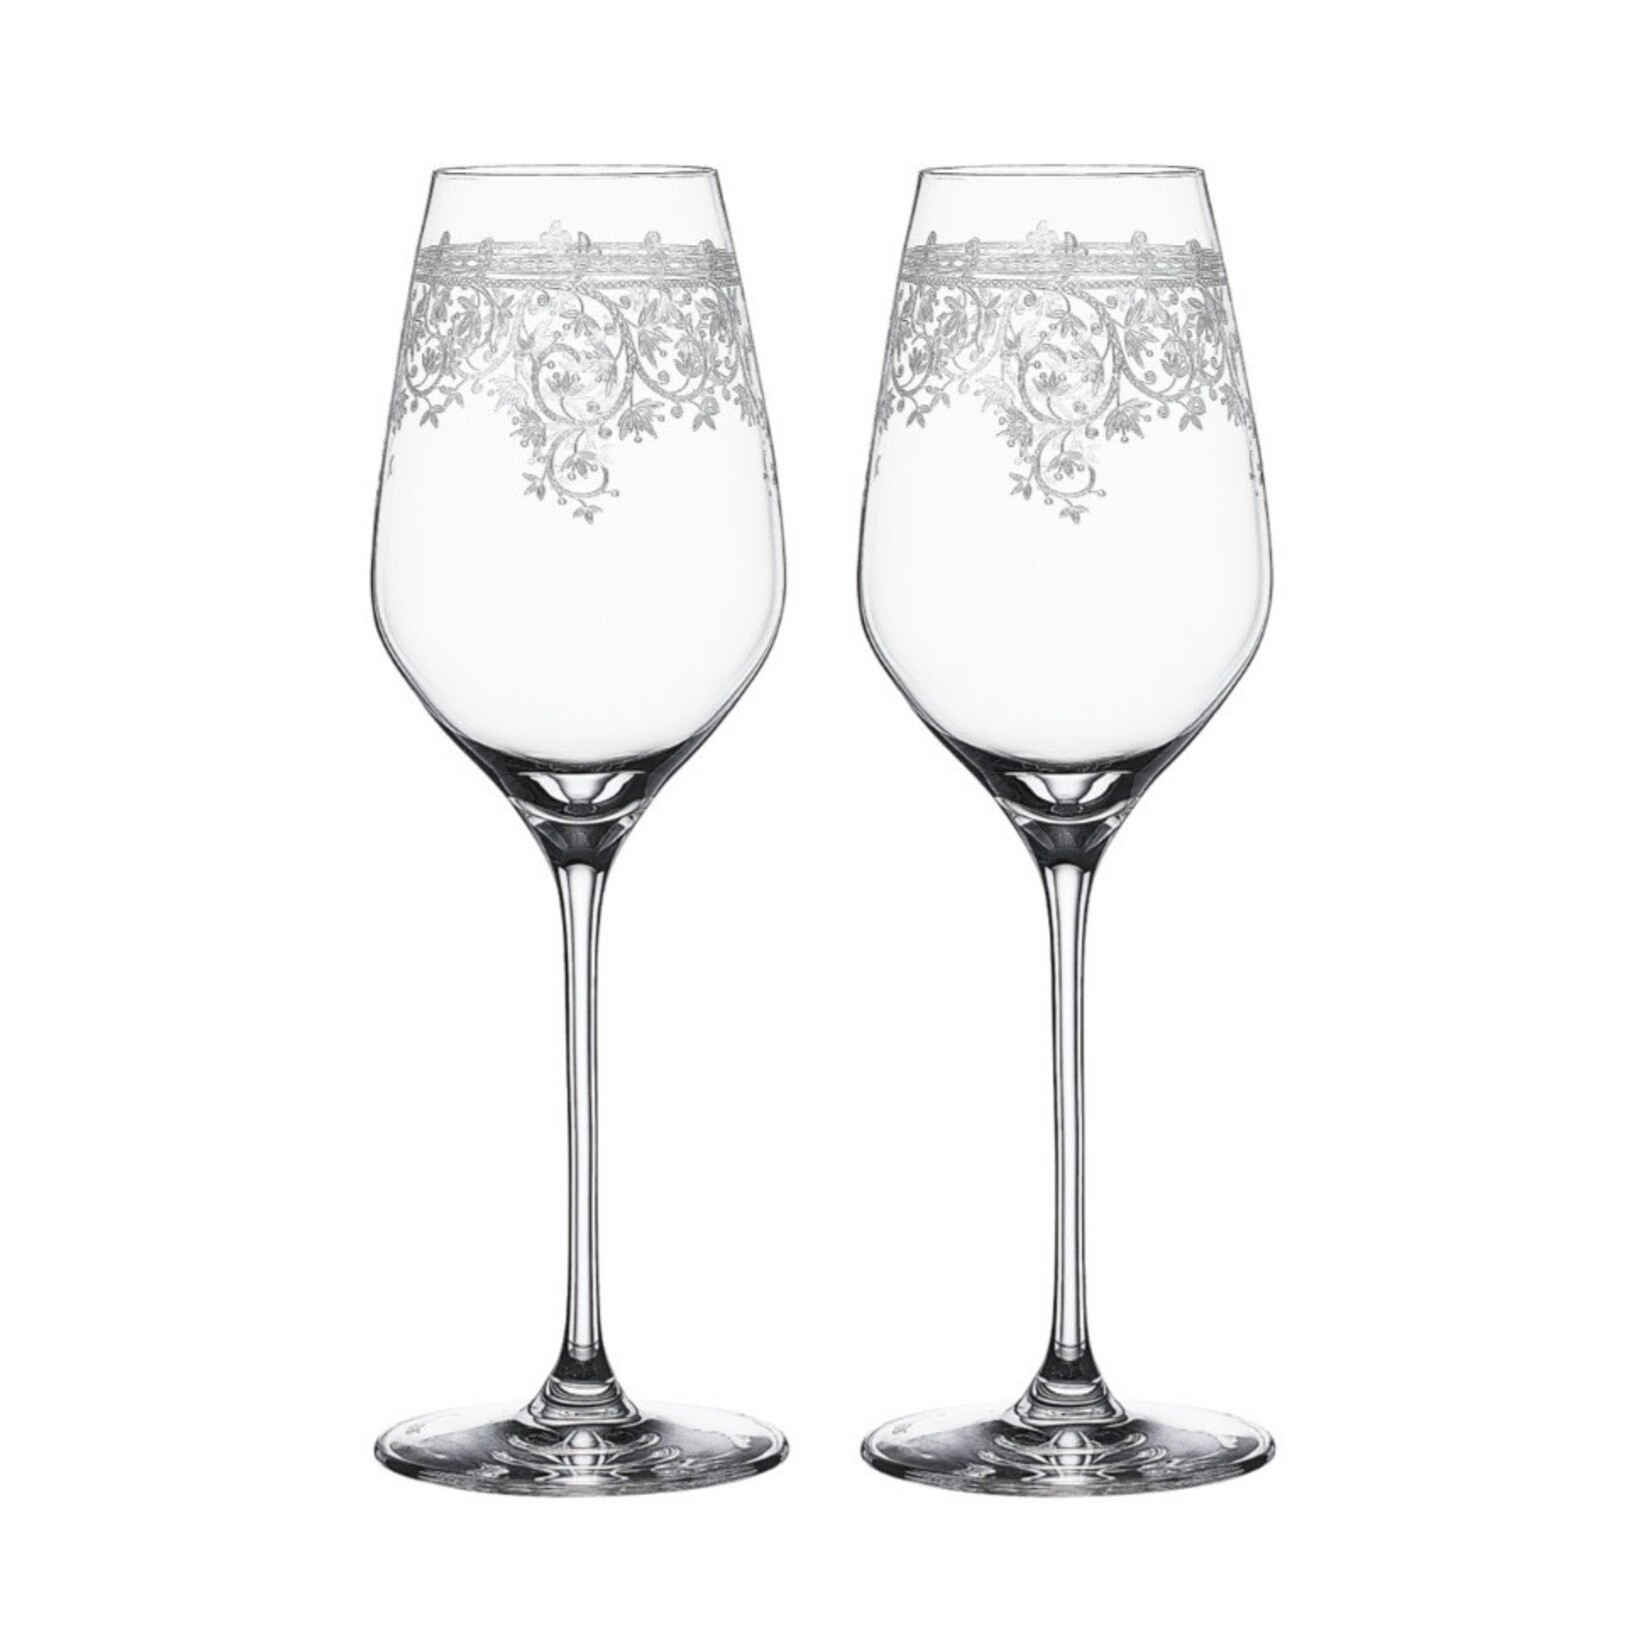 SPIEGELAU SPIEGELAU Arabesque White Wine Glass S/2